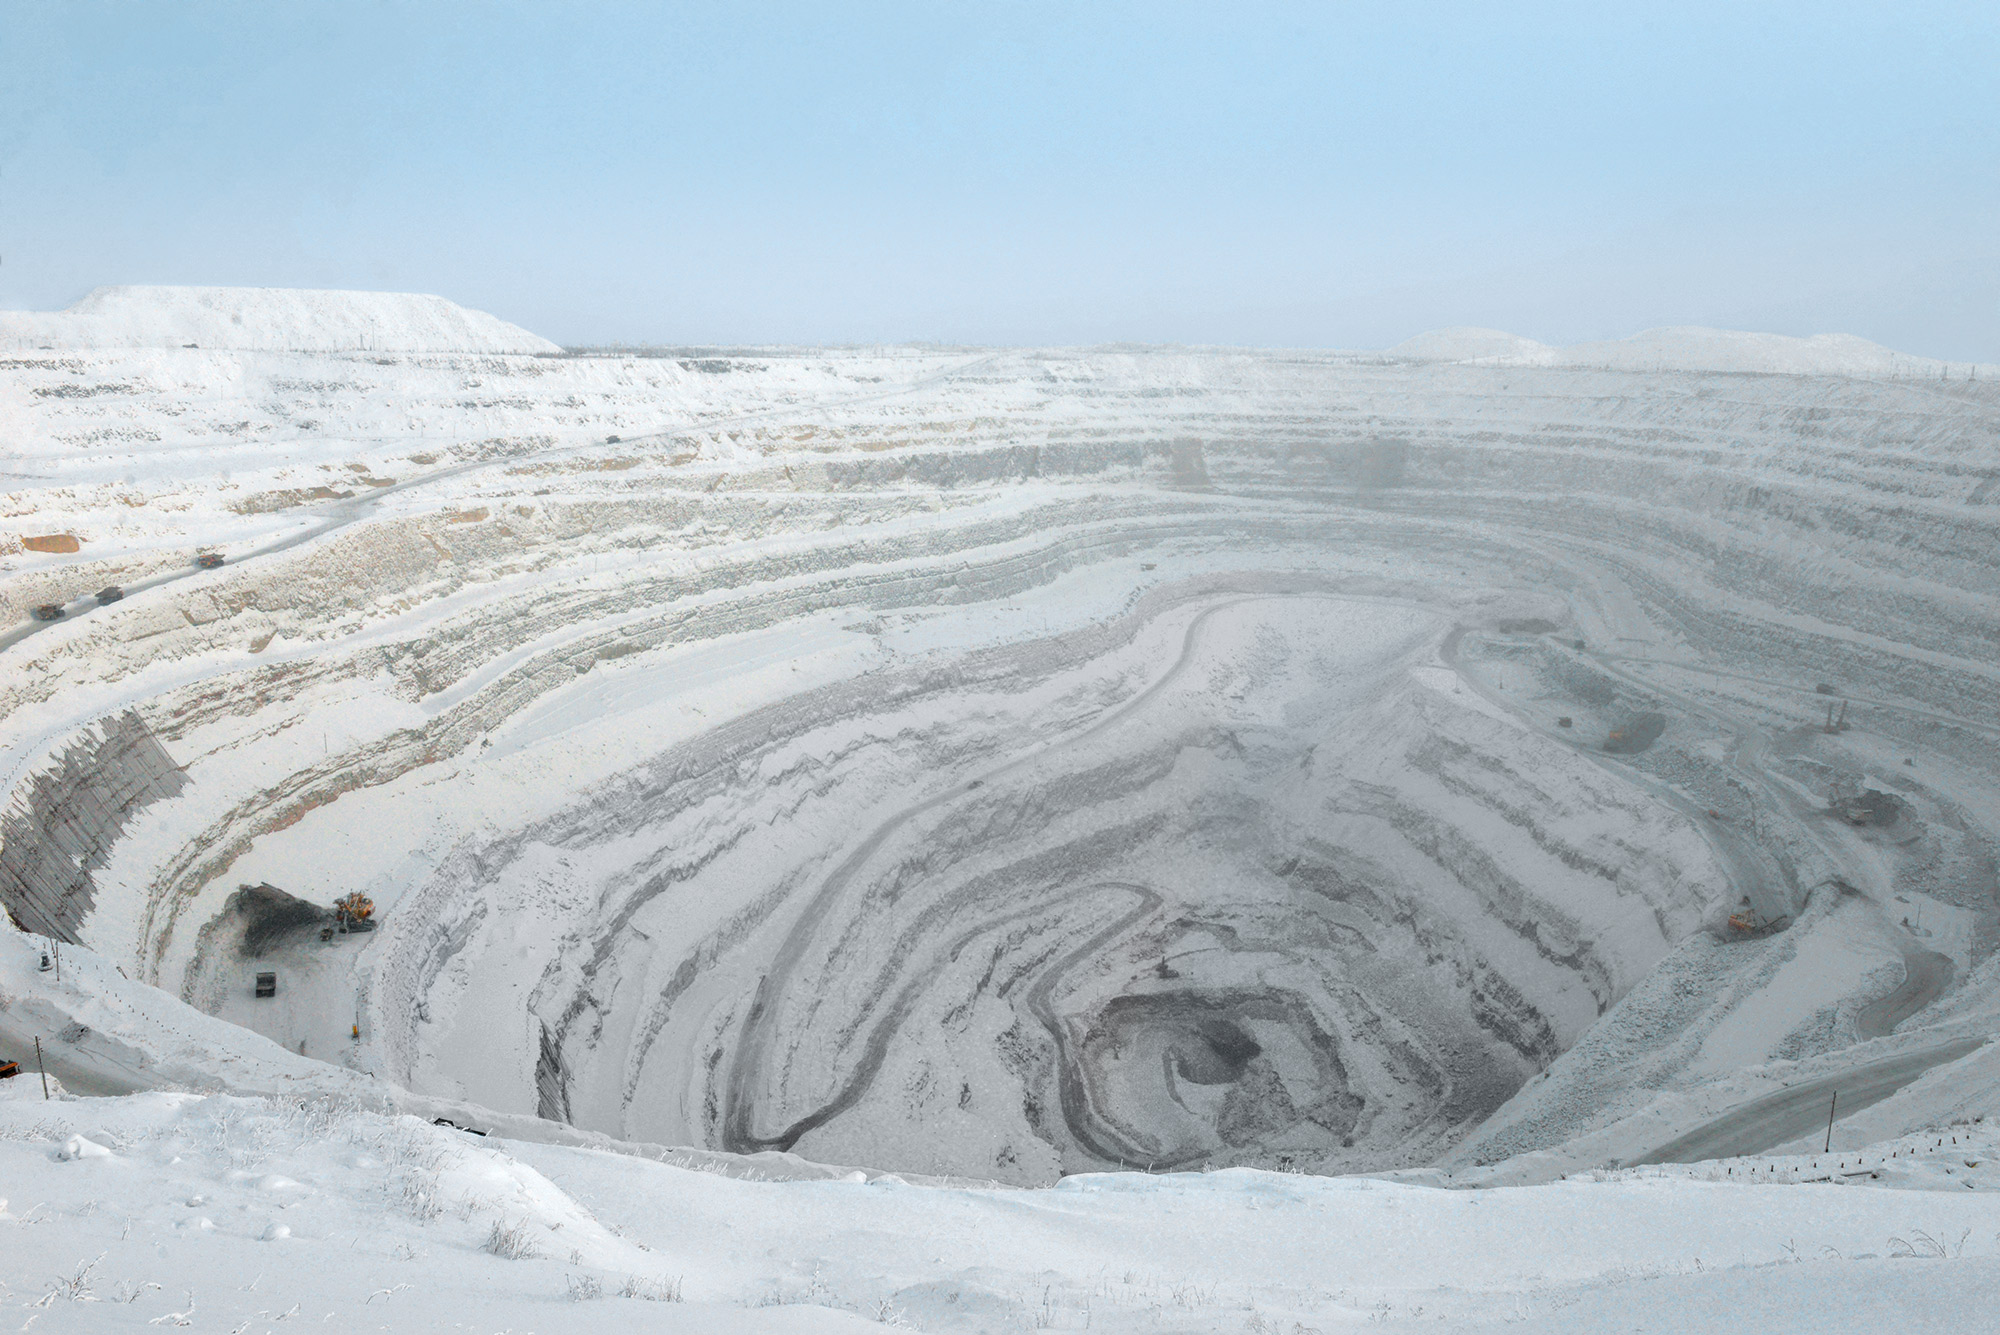 Große Gegensätze: In der Tagebaugrube Jubilejny werden wertvolle Diamanten gefördert – insgesamt mehr als zehn Millionen Karat. Mensch und Maschine müssen sie dem kalten Permafrostboden abtrotzen, weit abgelegen in Sibirien, kurz